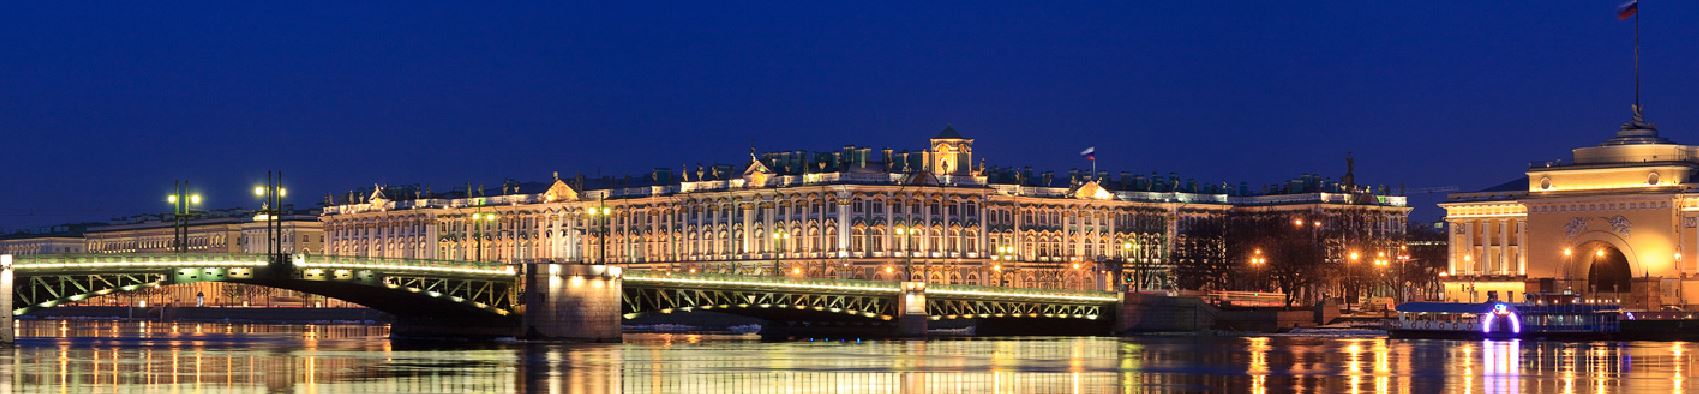 Экскурсия на китайском языке ночной Санкт-Петербург для китайских туристов